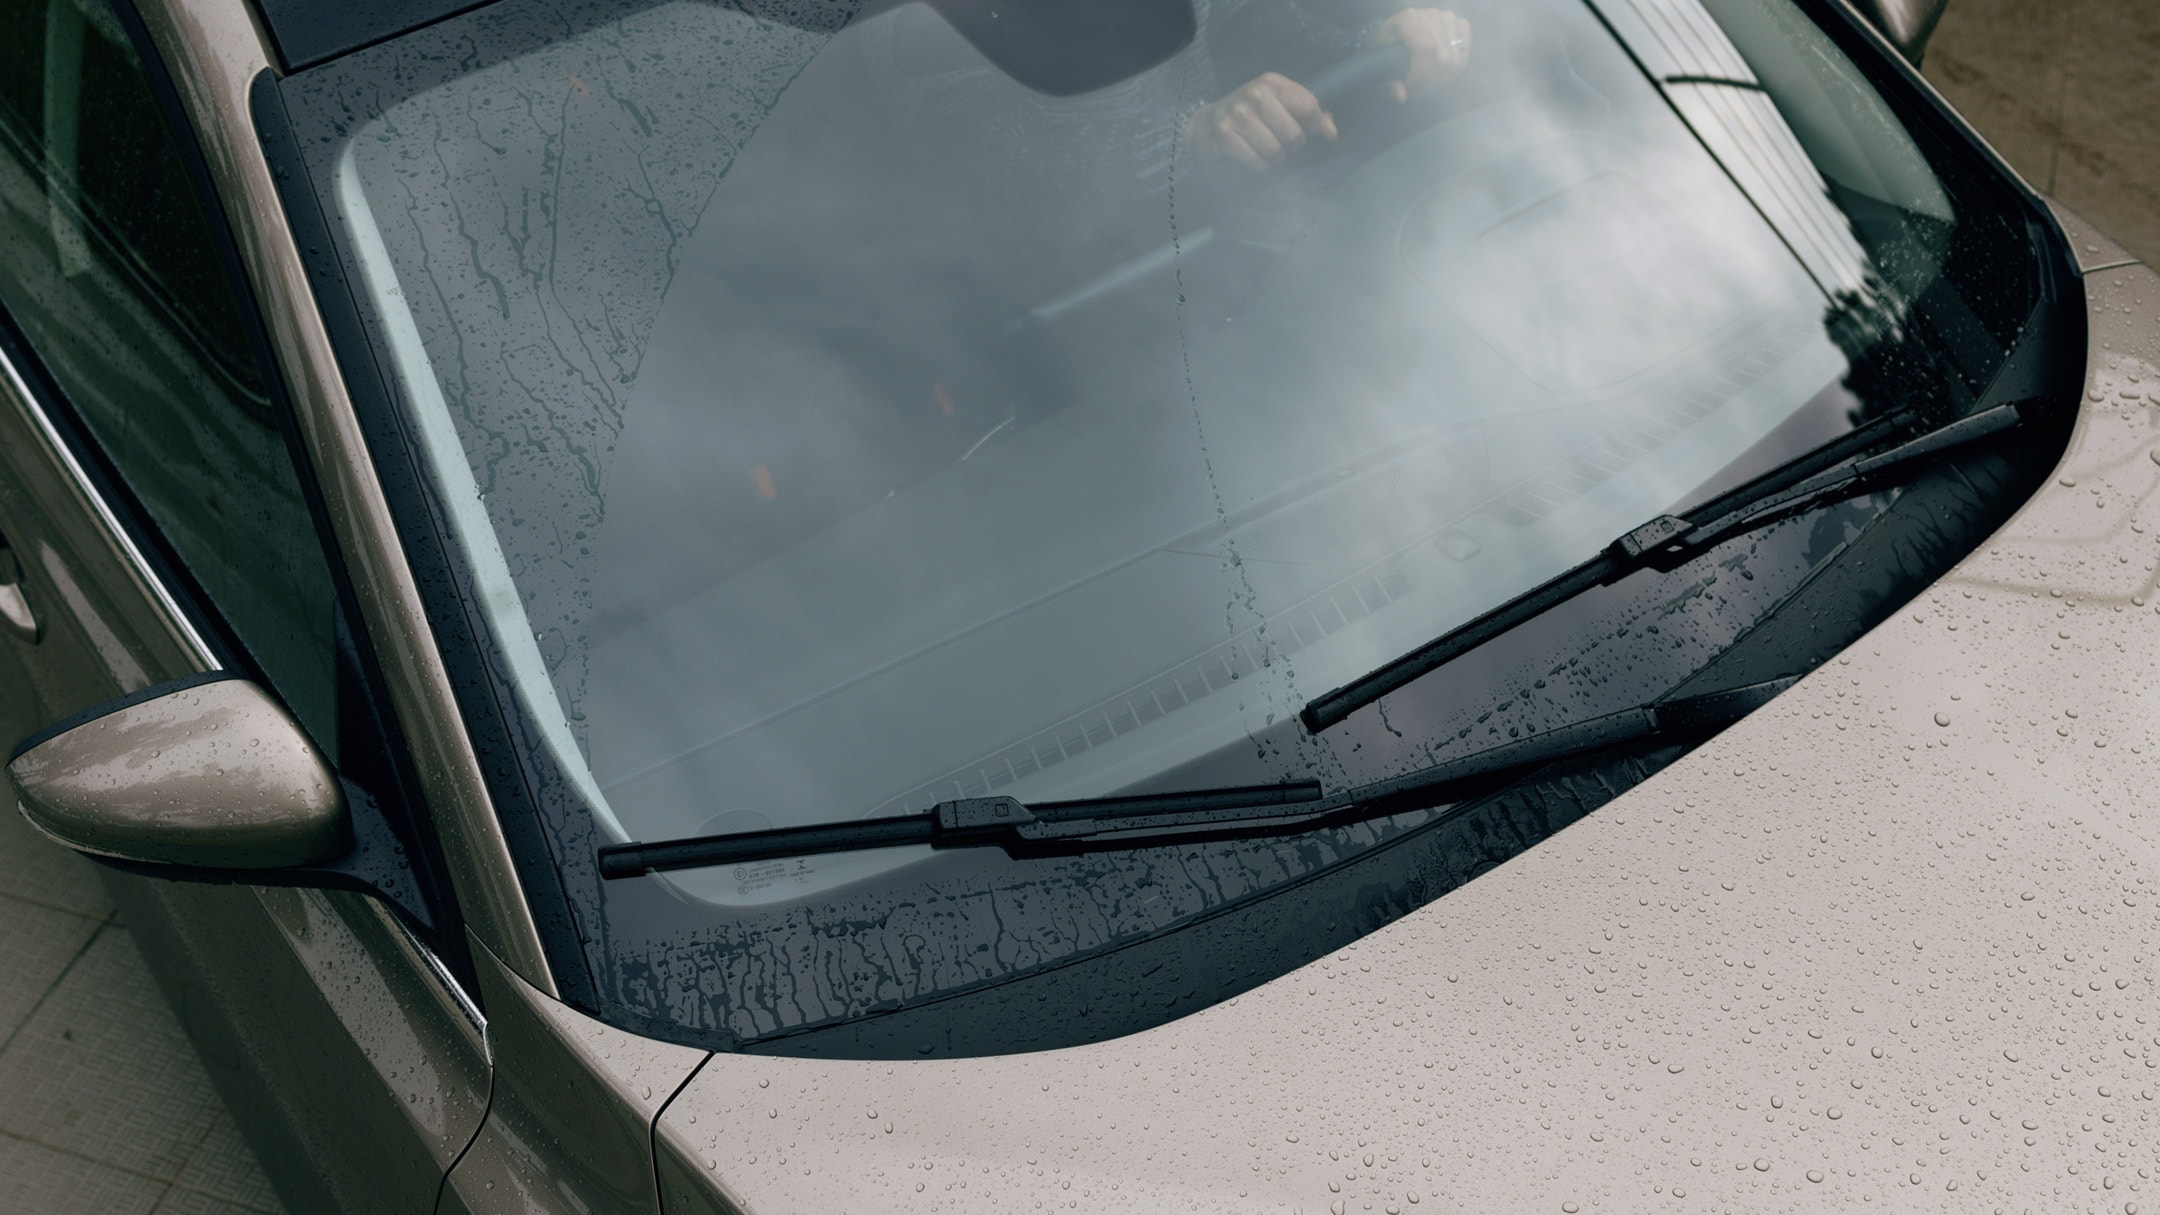 Ford Puma couleur grise. Vue sur le pare-brise avec gouttes de pluie